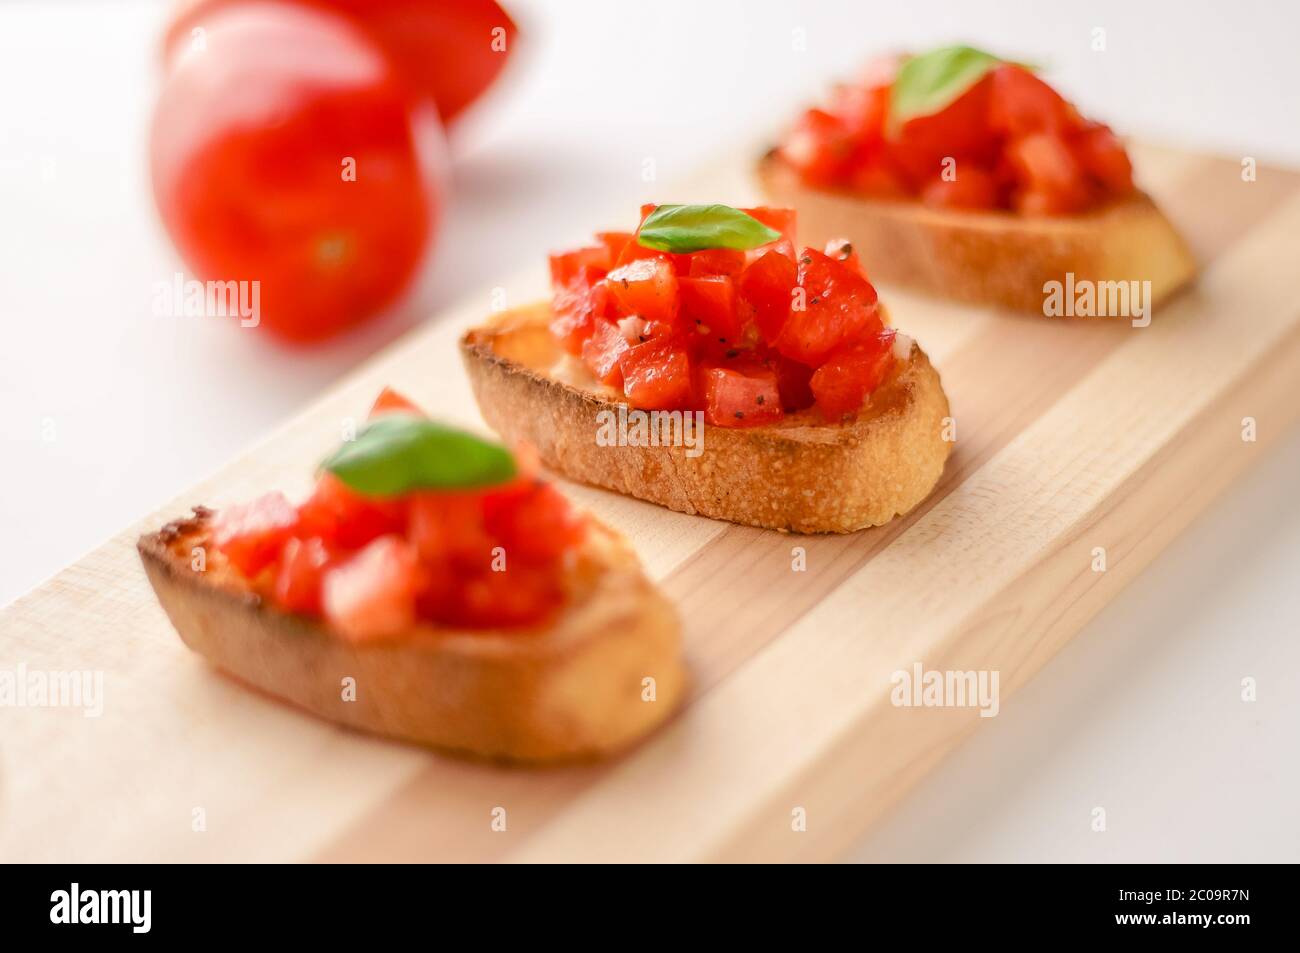 La bruschetta è un alimento italiano fatto di pomodori tritati, aglio, basilico ed erbe fresche su un pane tostato. Viene solitamente servito come snack o antipasti. Foto Stock